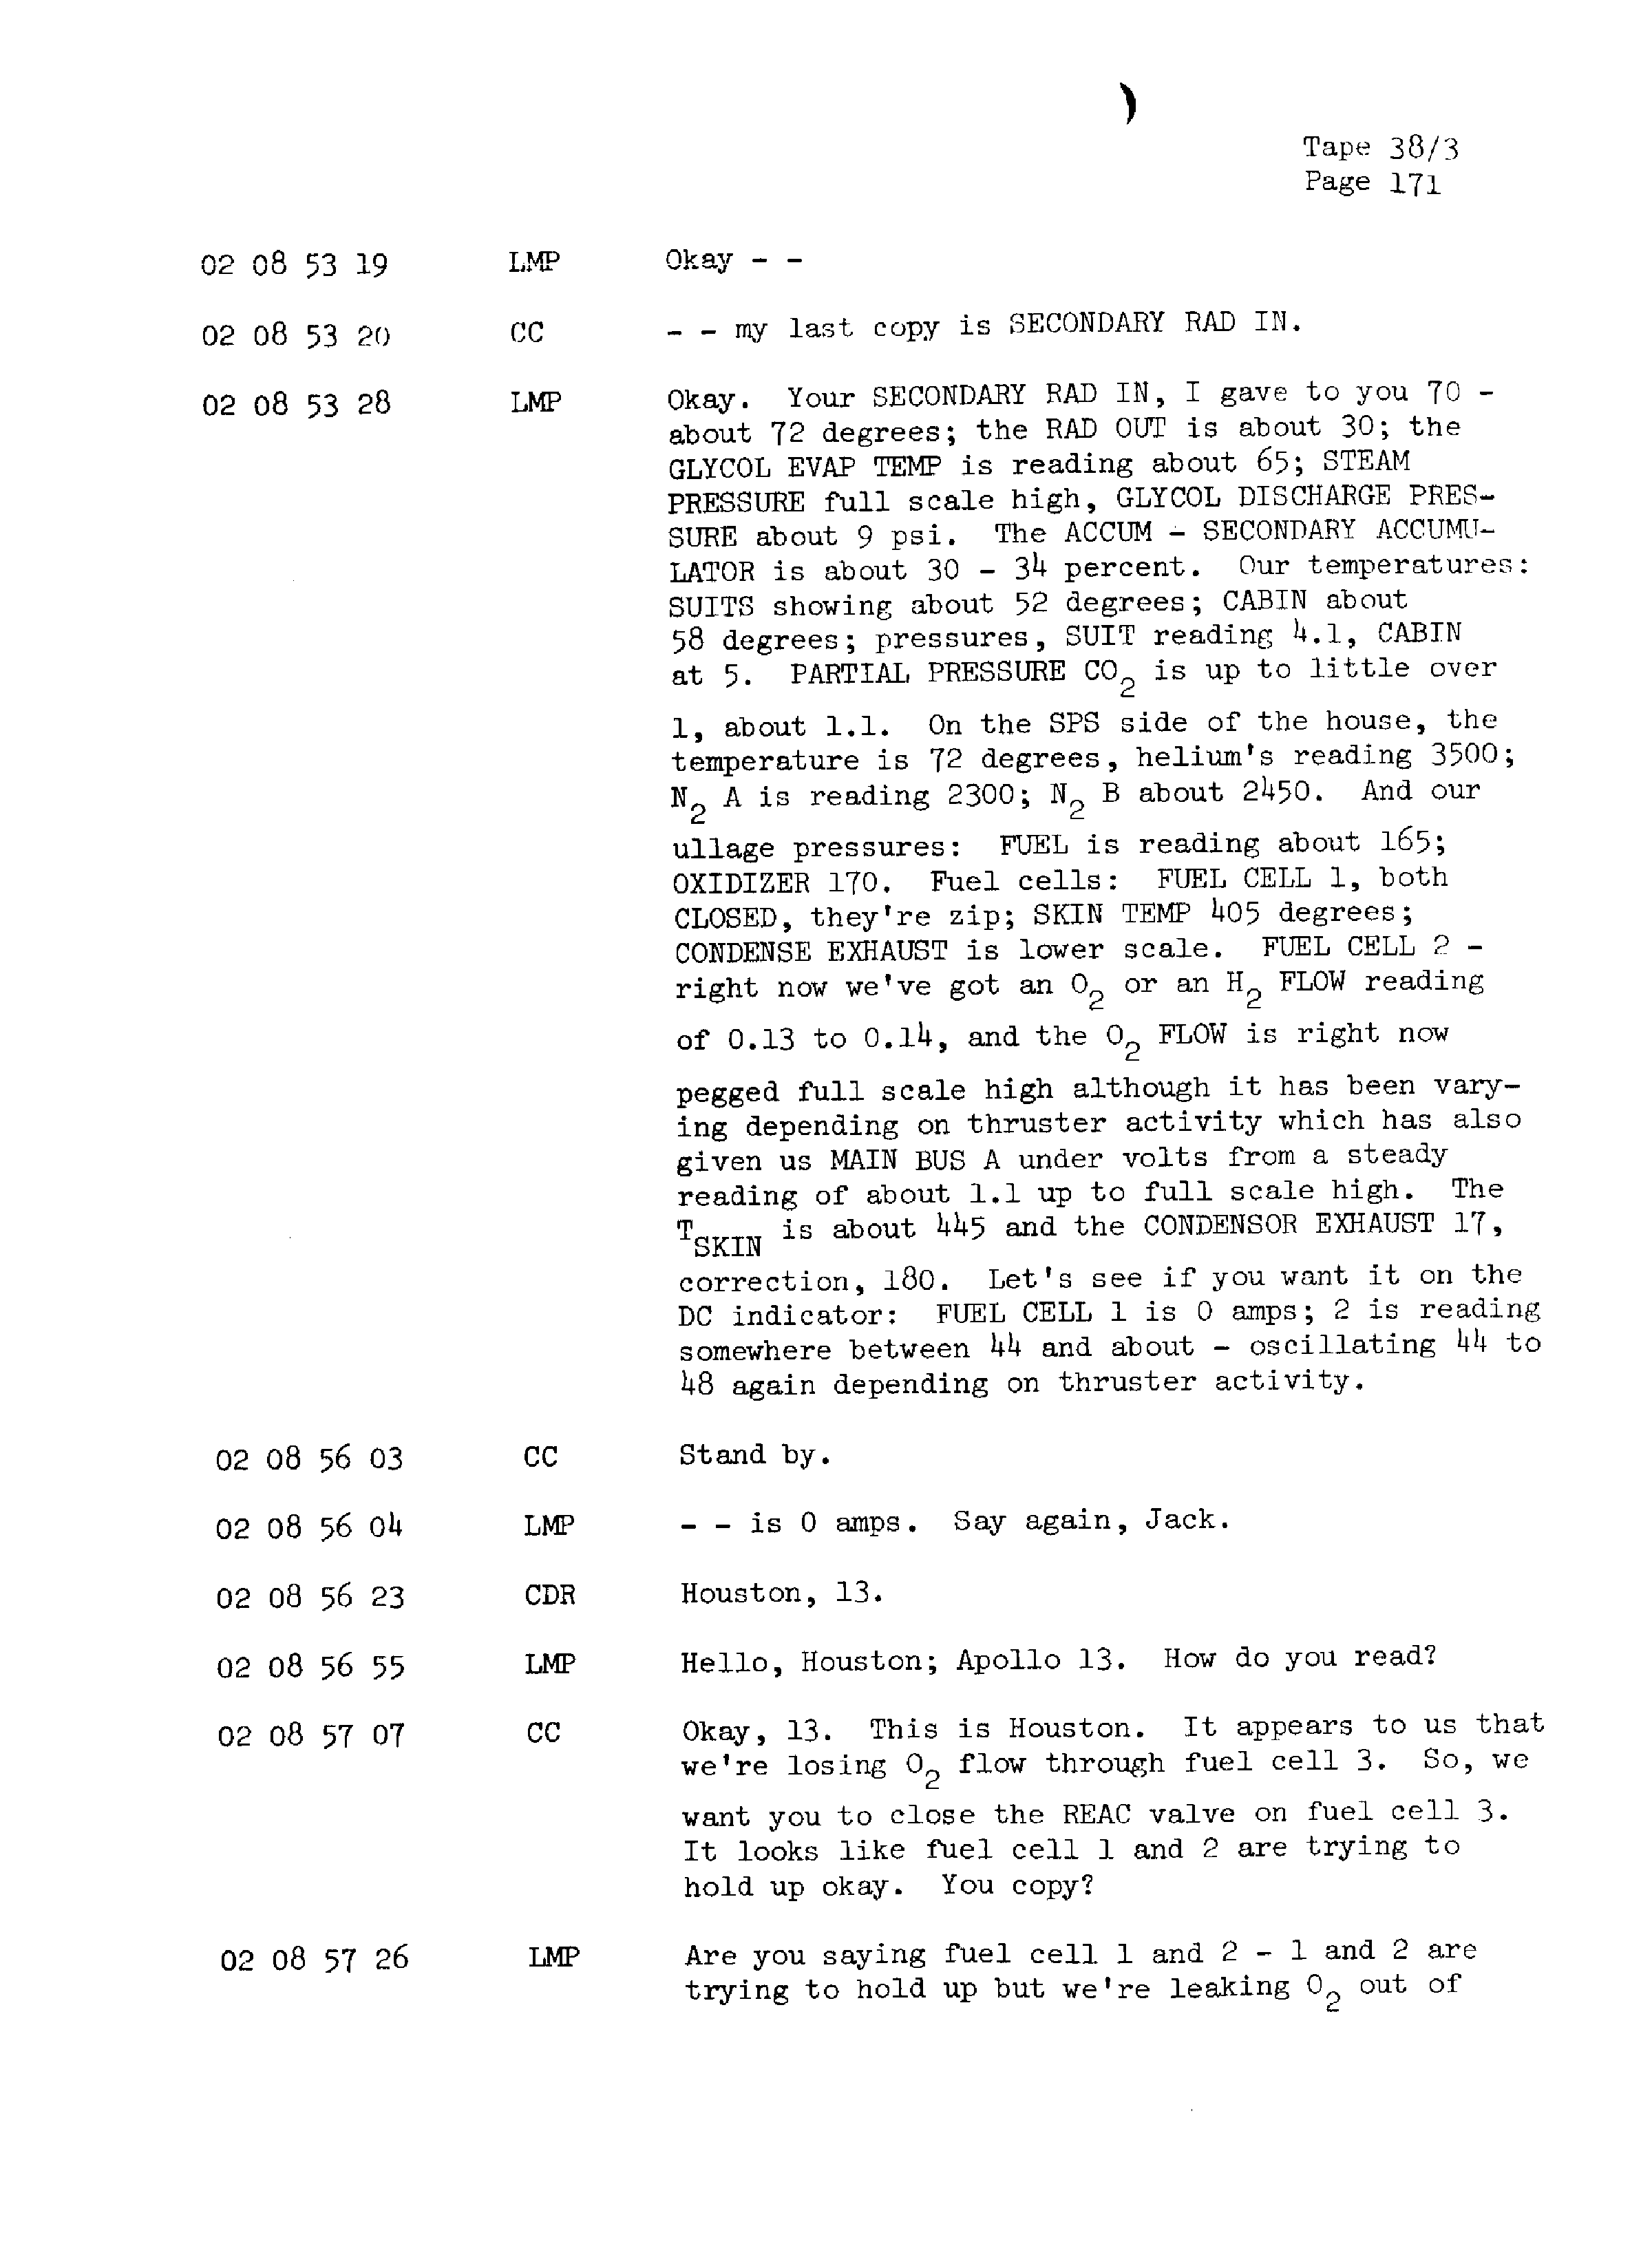 Page 178 of Apollo 13’s original transcript